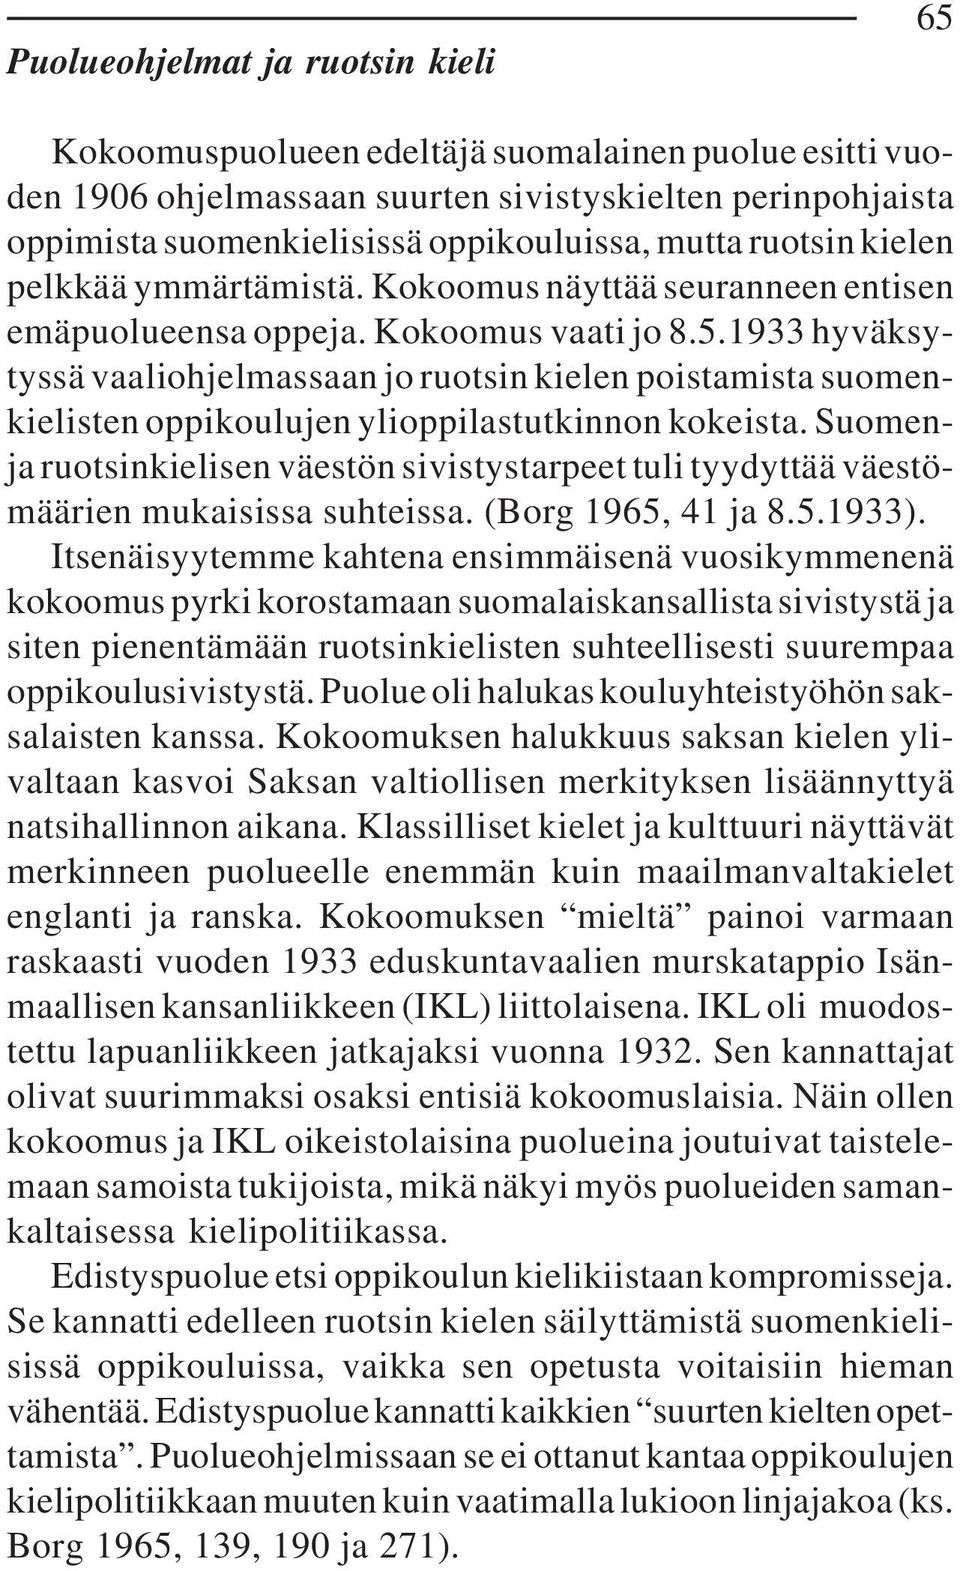 1933 hyväksytyssä vaaliohjelmassaan jo ruotsin kielen poistamista suomenkielisten oppikoulujen ylioppilastutkinnon kokeista.